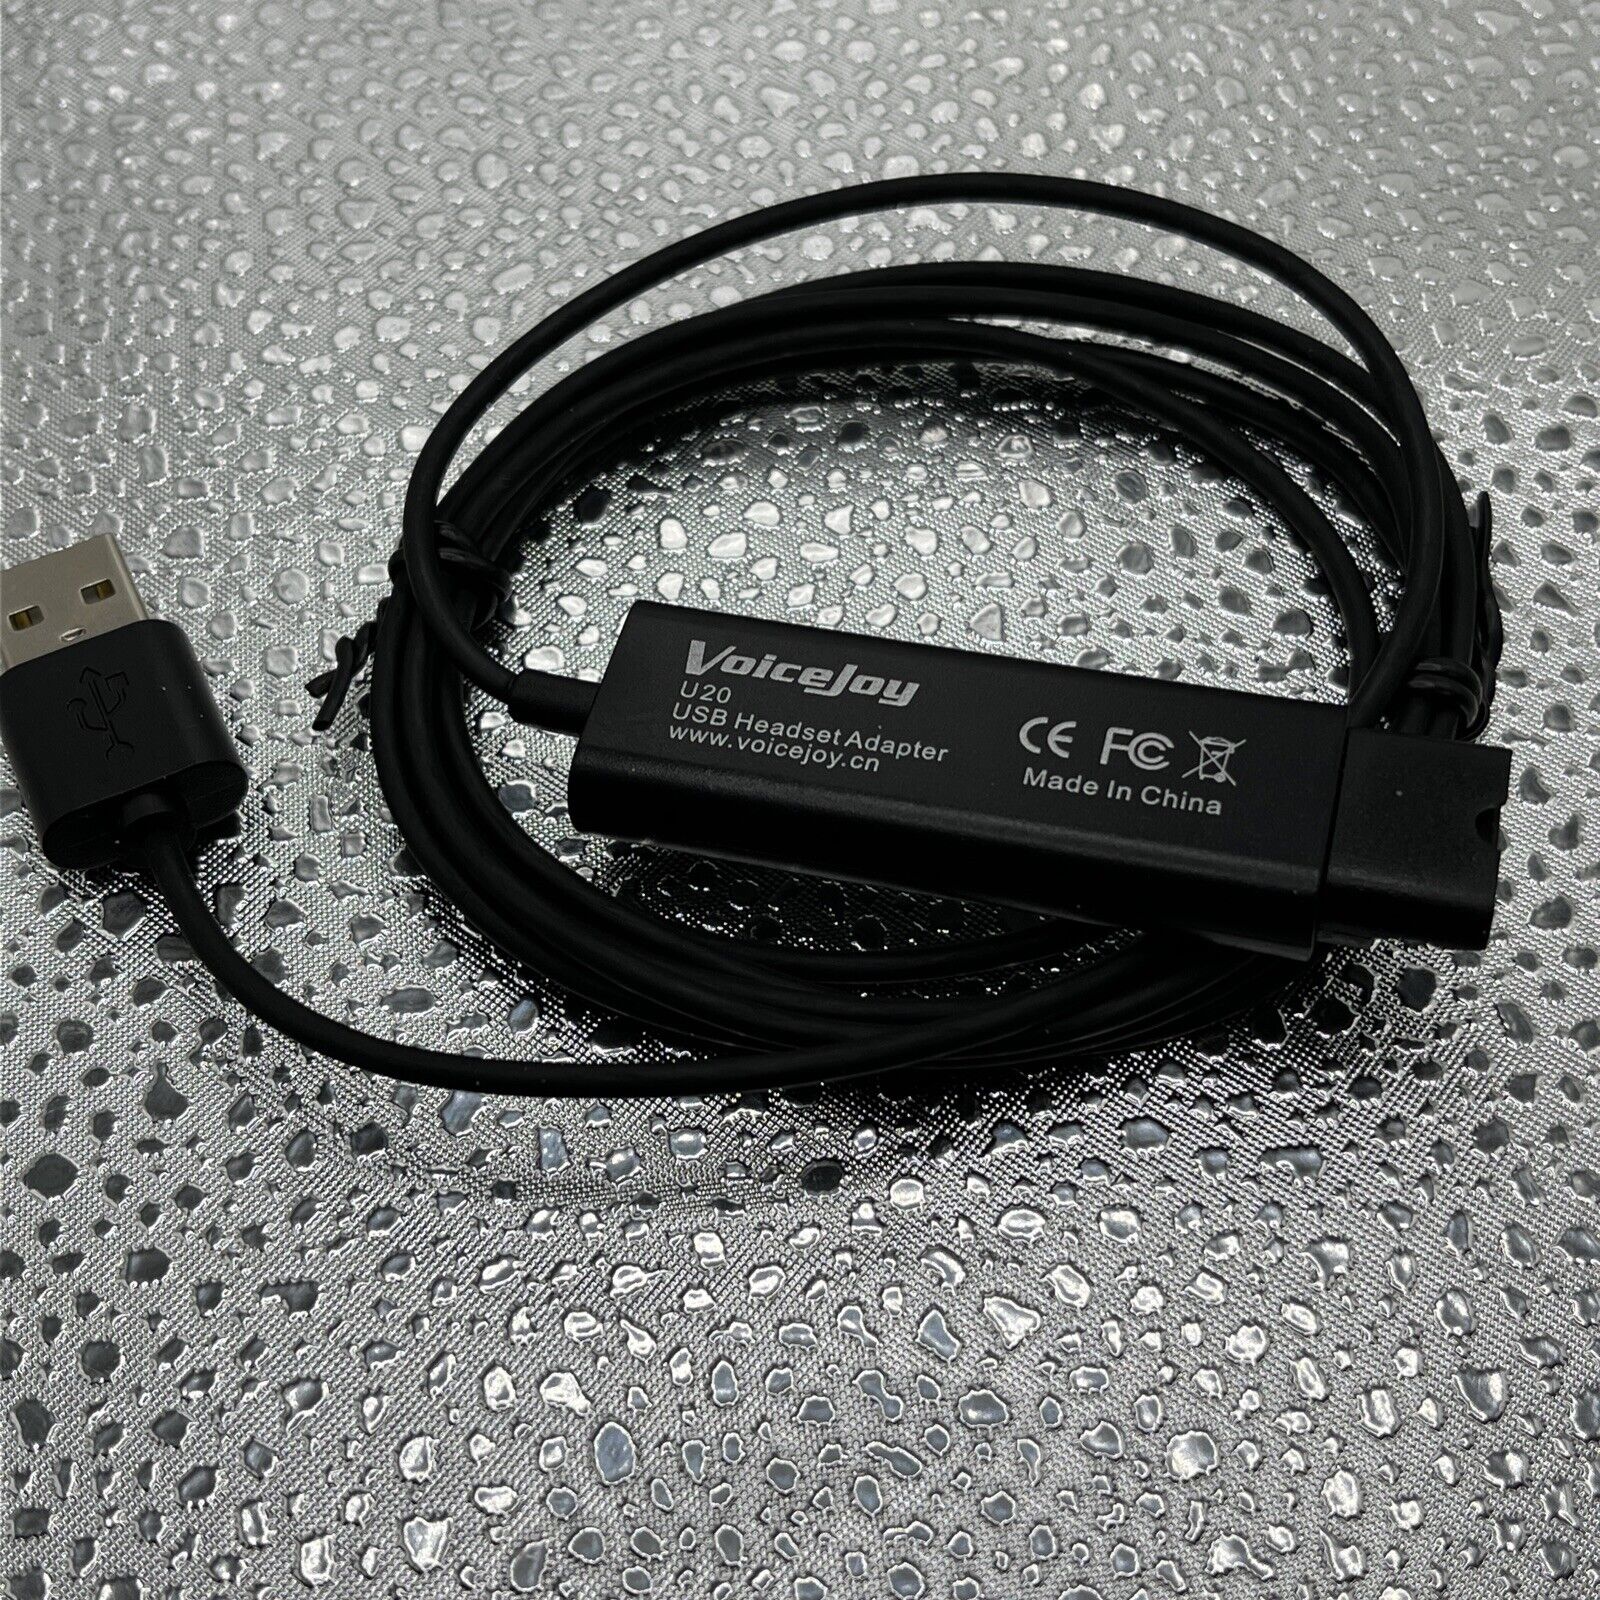 VoiceJoy u20 USB quick disconnect QD Cable Adapter mute volume plantronics